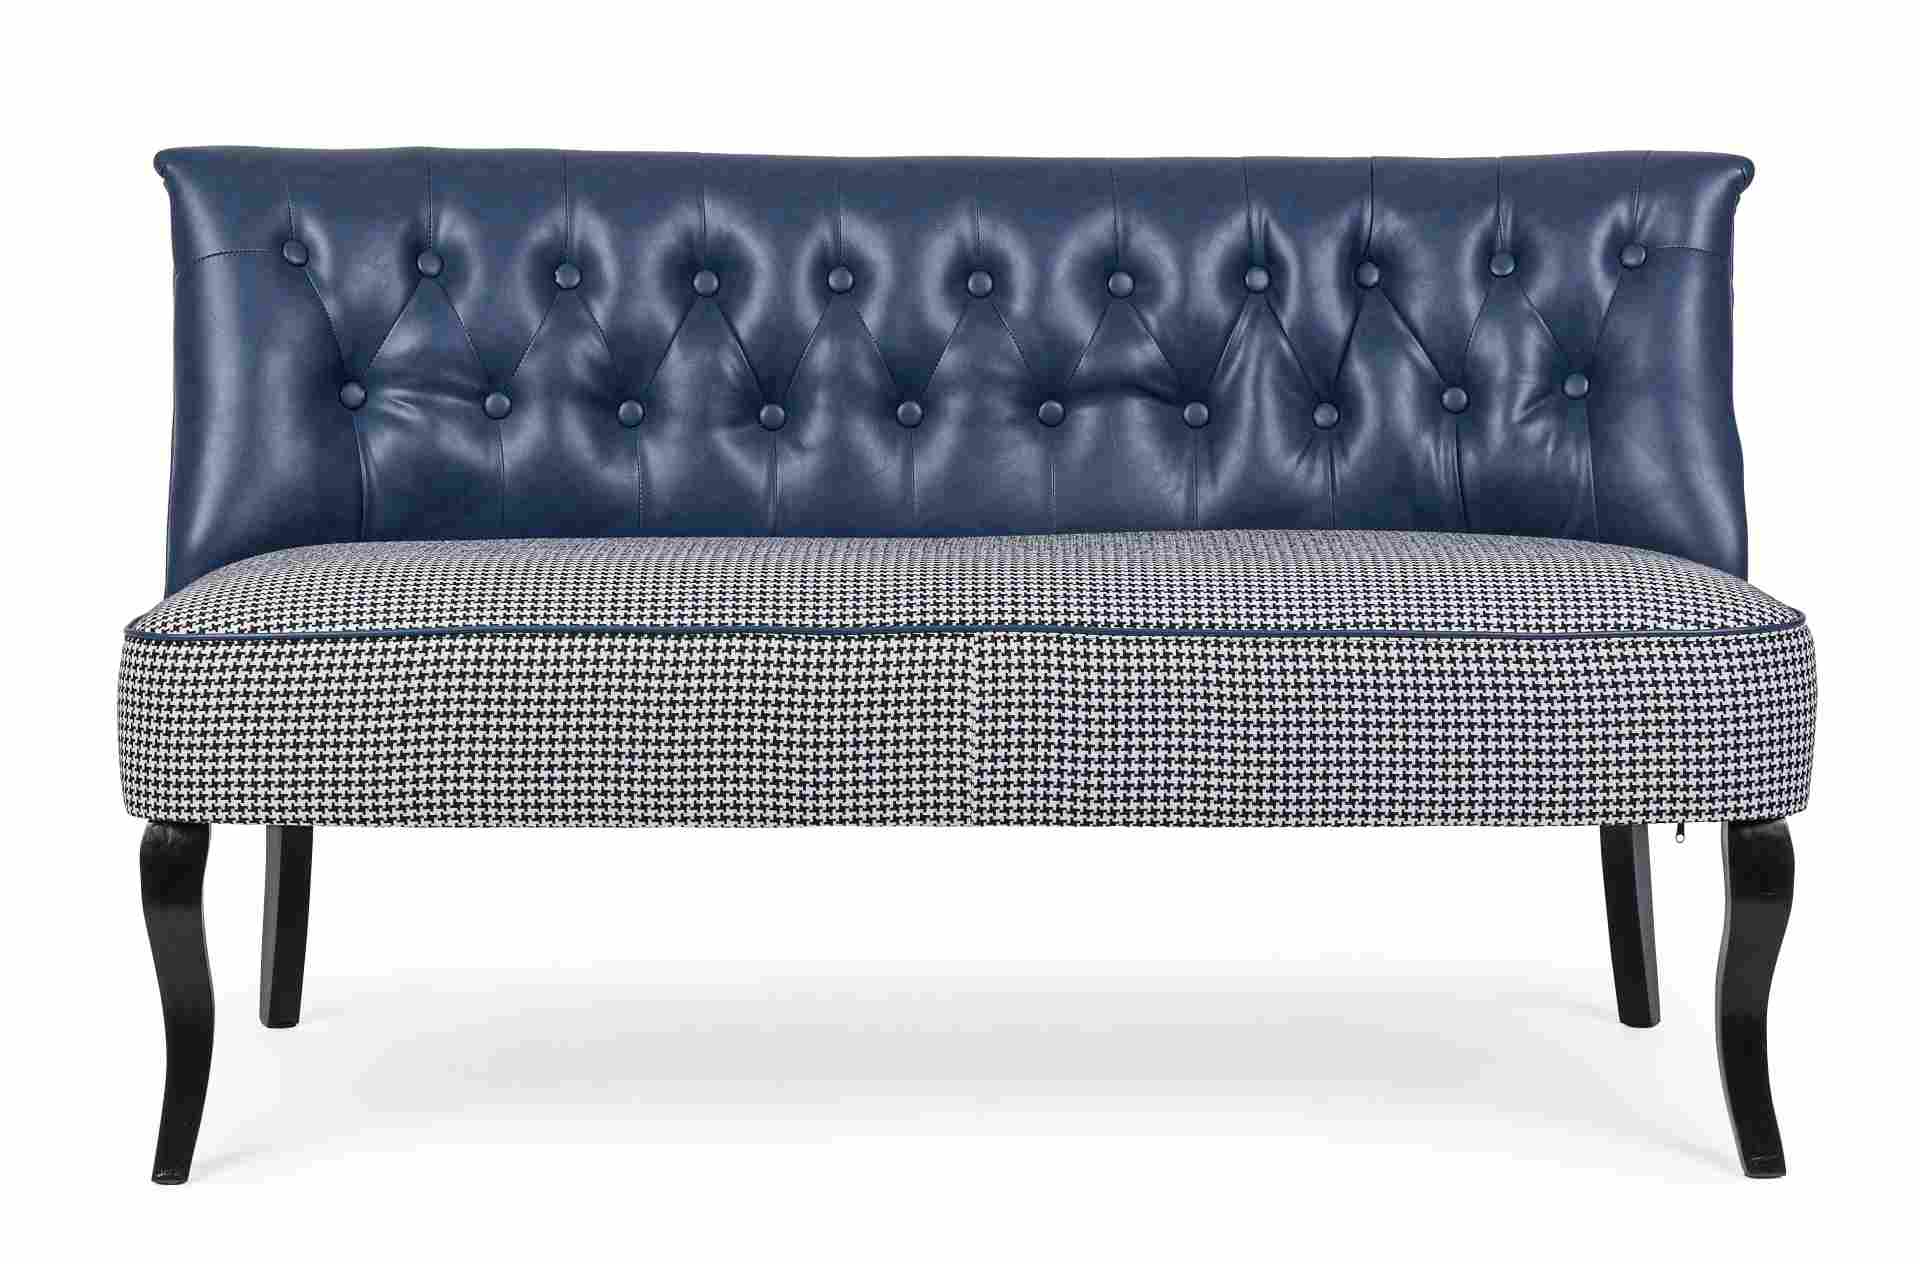 Das Sofa Batilda überzeugt mit seinem klassischen Design. Gefertigt wurde es aus Kunstleder, welches einen blauen Farbton besitzt. Das Gestell ist aus Kiefernholz und hat eine schwarze Farbe. Das Sofa ist in der Ausführung als 2-Sitzer. Die Breite beträgt